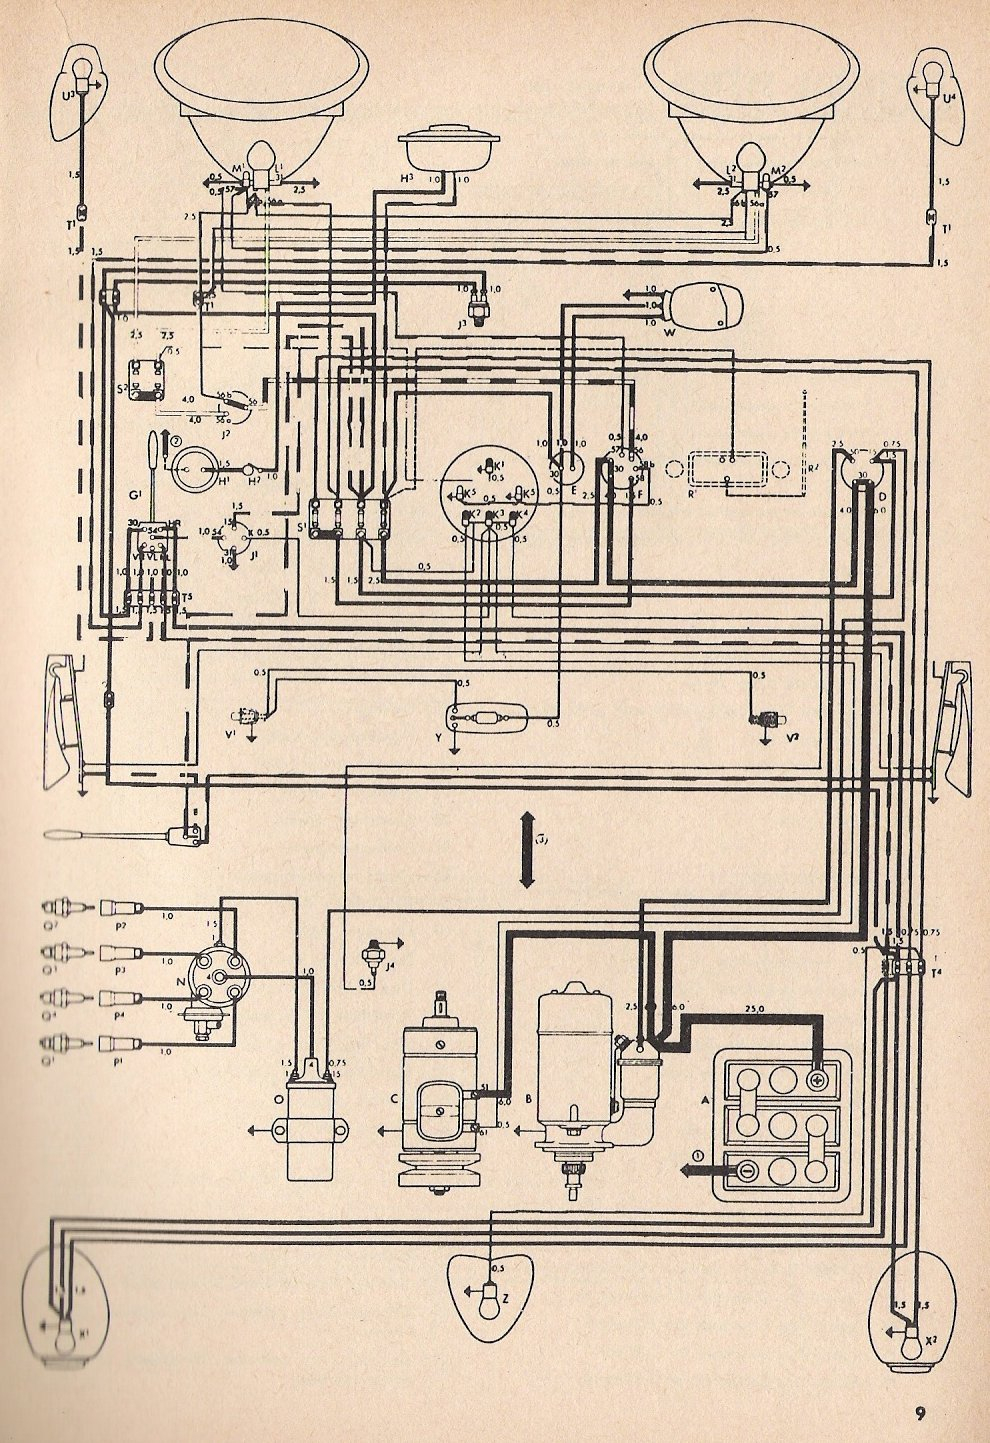 Thesamba :: Type 1 Wiring Diagrams - 1973 Vw Beetle Wiring Diagram